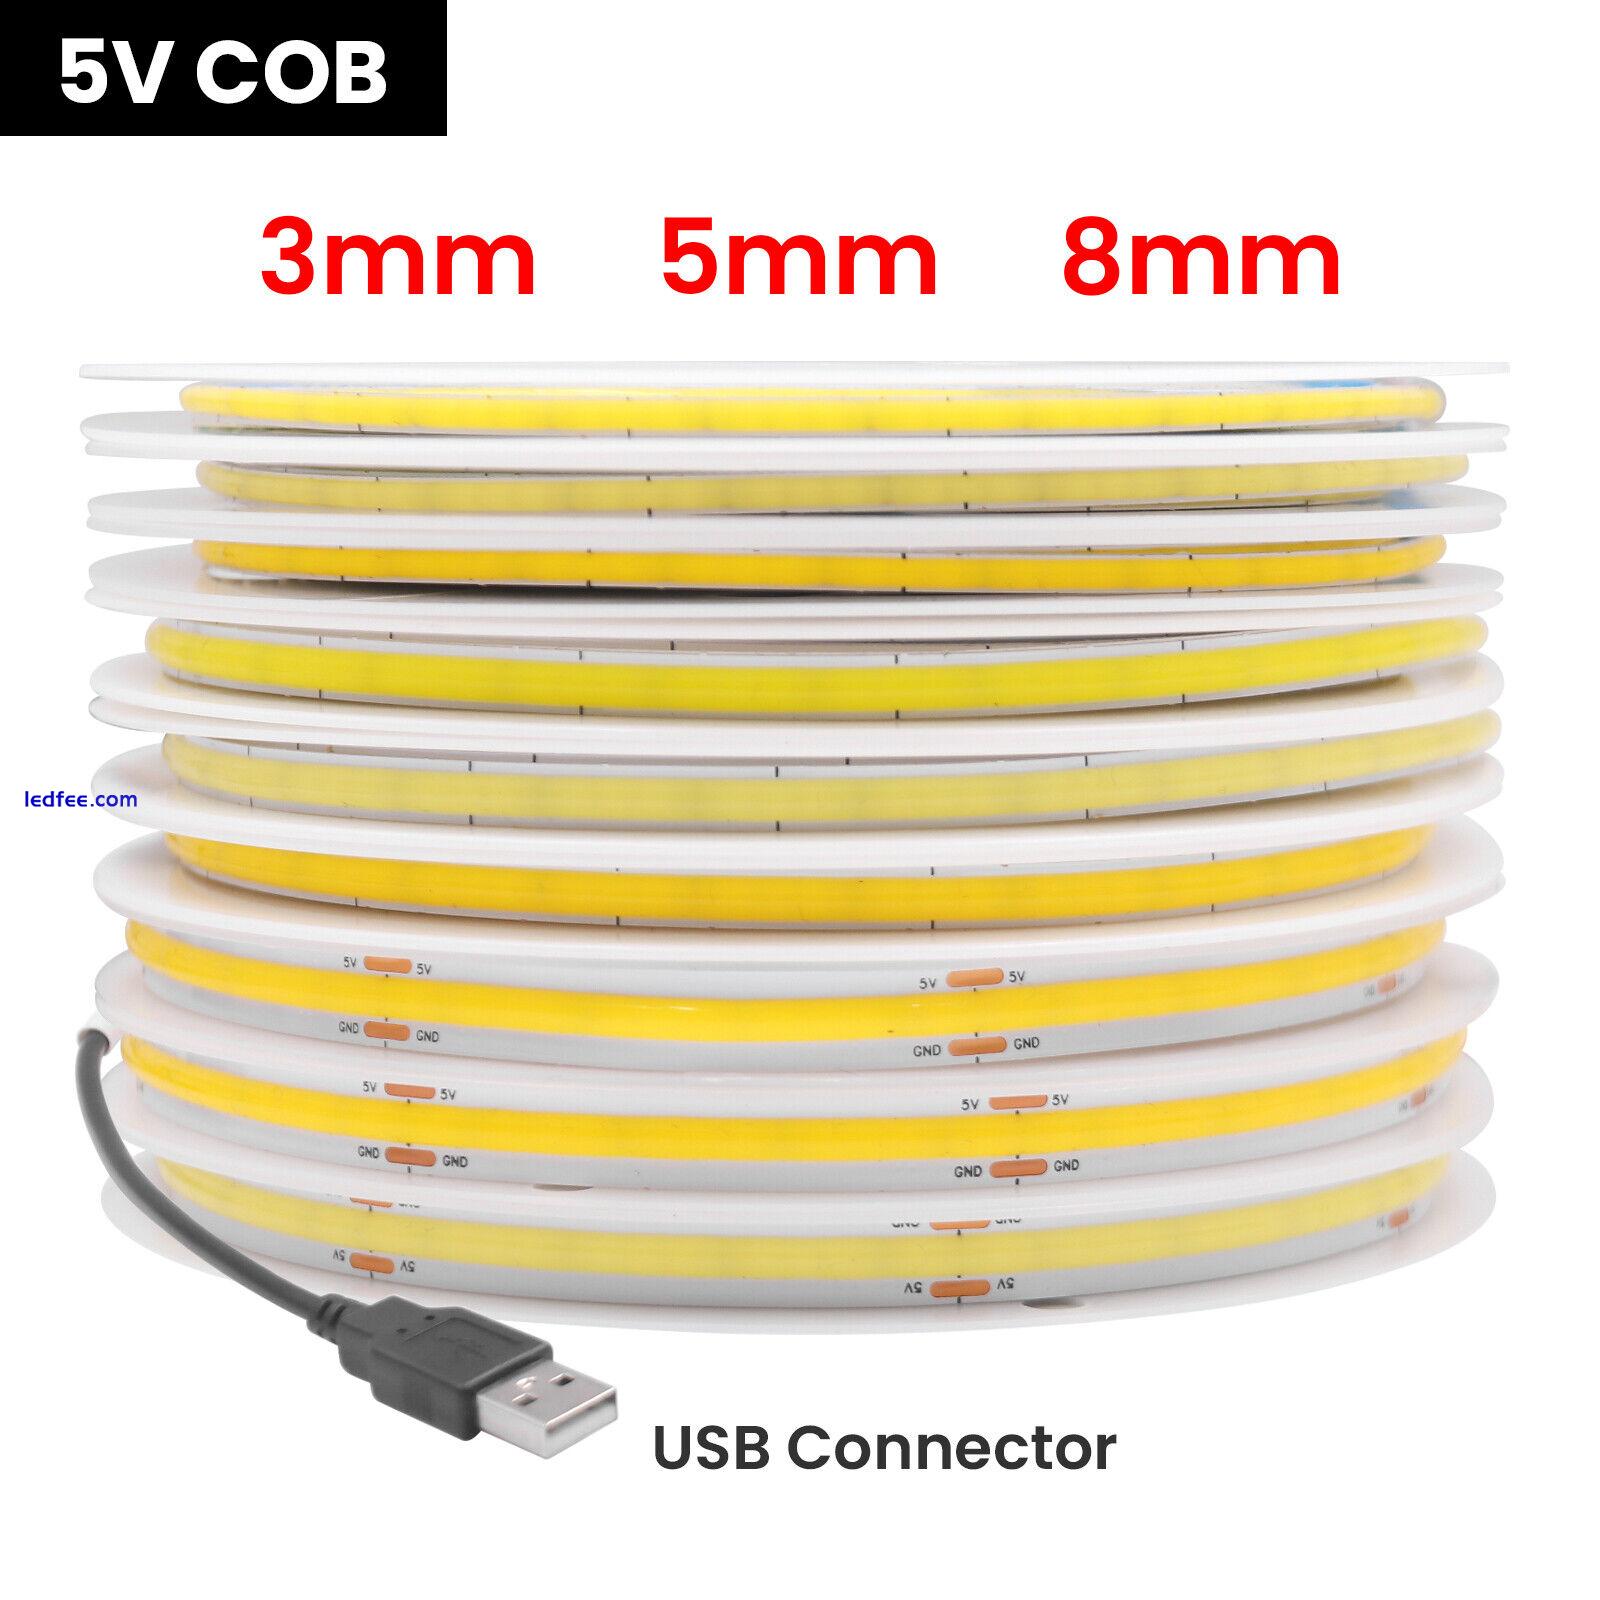 3mm 5mm 8mm COB LED Strip Light High Density Flexible Tape 5V Linear Lighting 2 